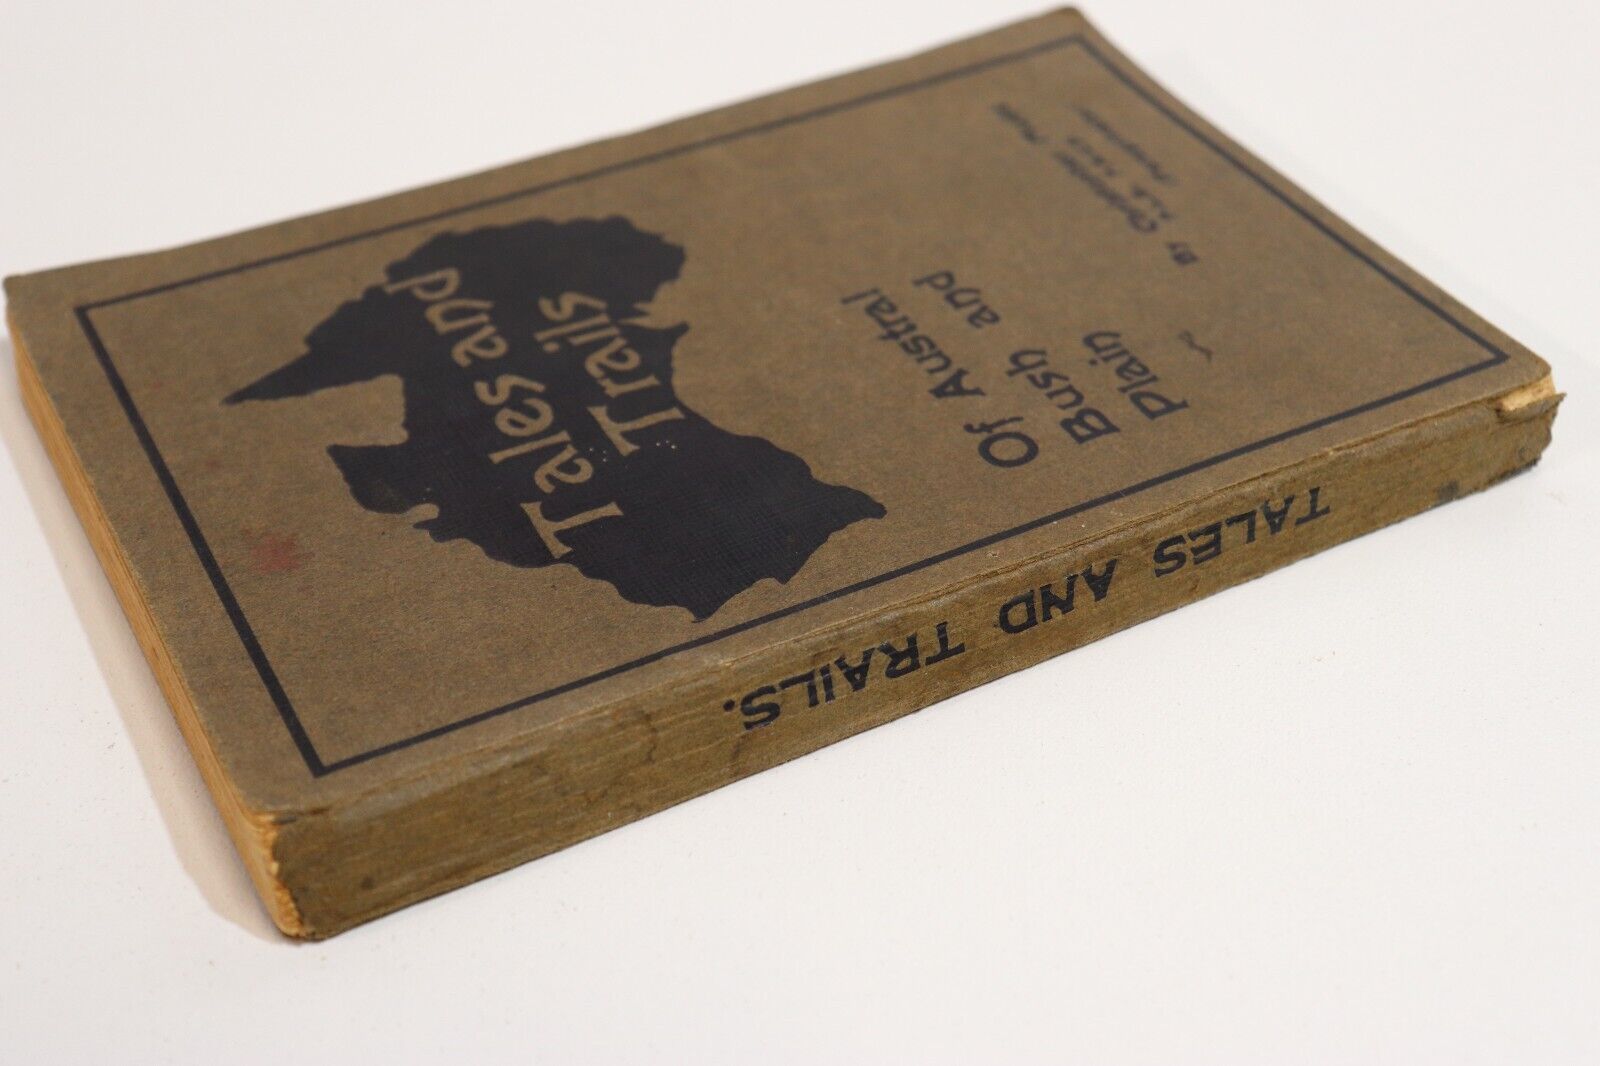 c1912 Tales & Trails Of Austral Bush & Plain by C Mudd Australian Fiction Book - 0